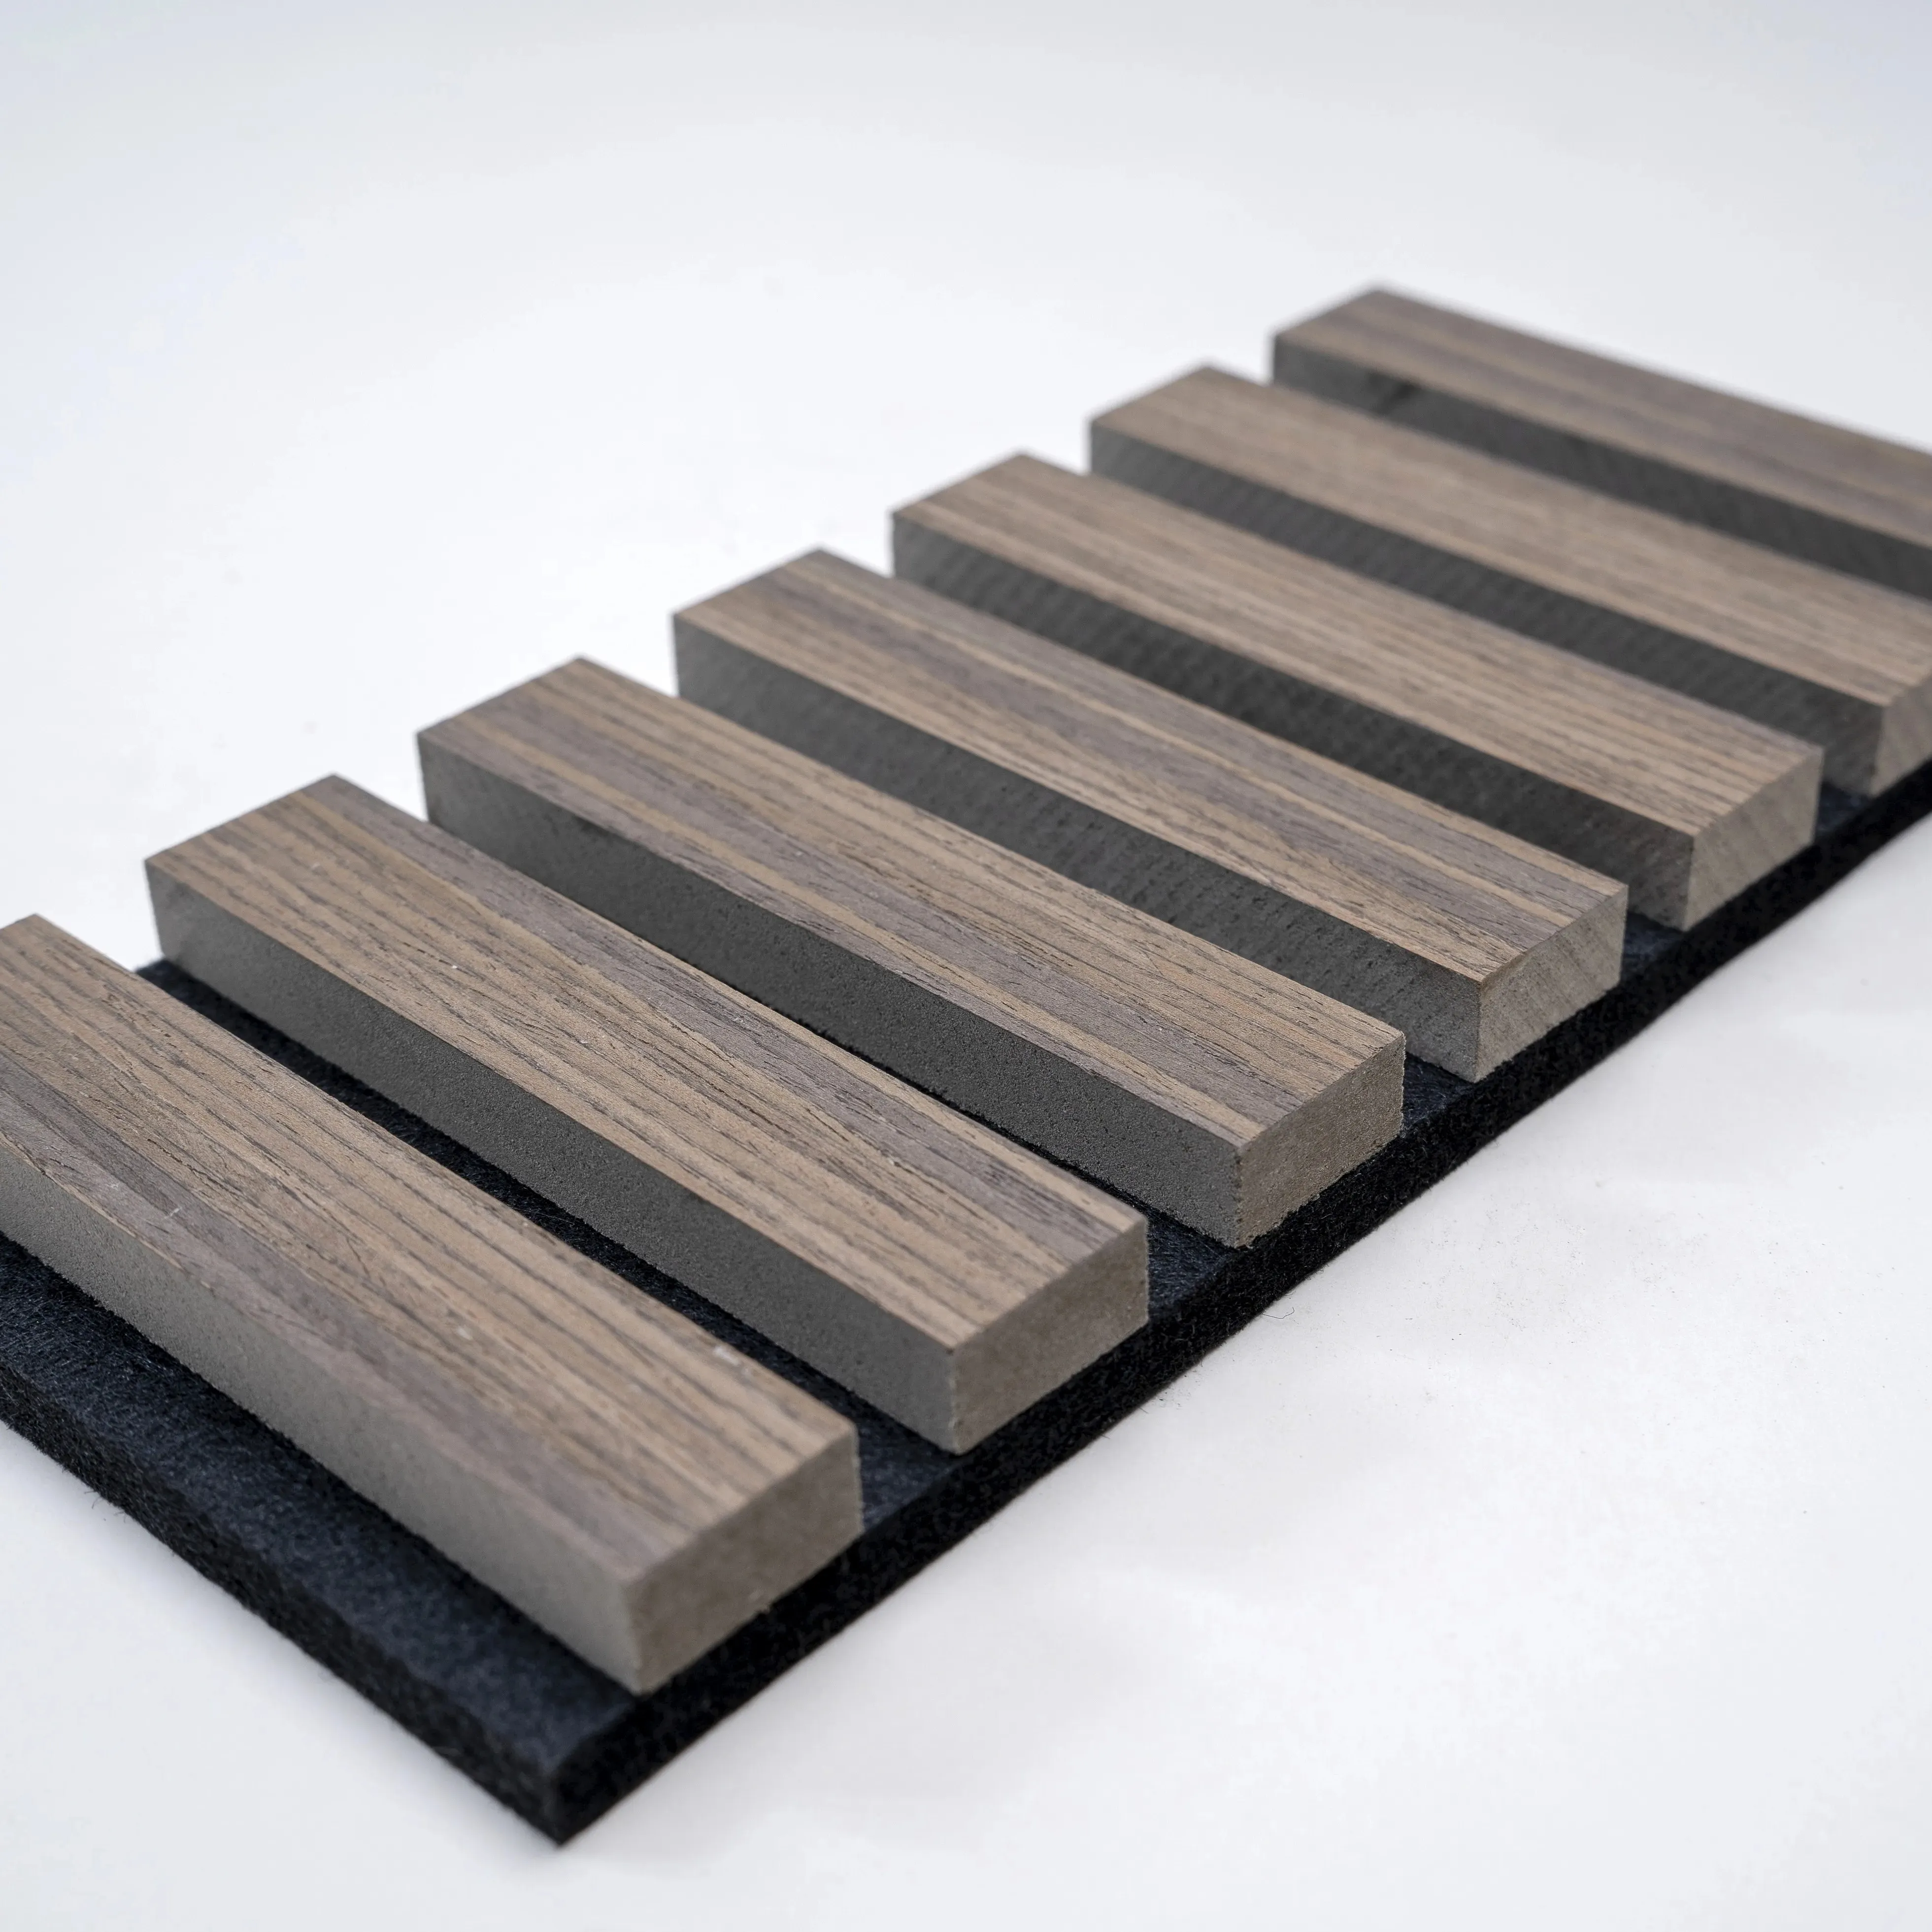 لوح خشبي من خشب ليفي من خشب متوسط الكثافة بتصميم نموذج ثلاثي الأبعاد مادة ماصة للصوت لوح حائط من لوح خشبي مزود بجوانب صوتية لتزيين الأسقف والجدران الداخلية